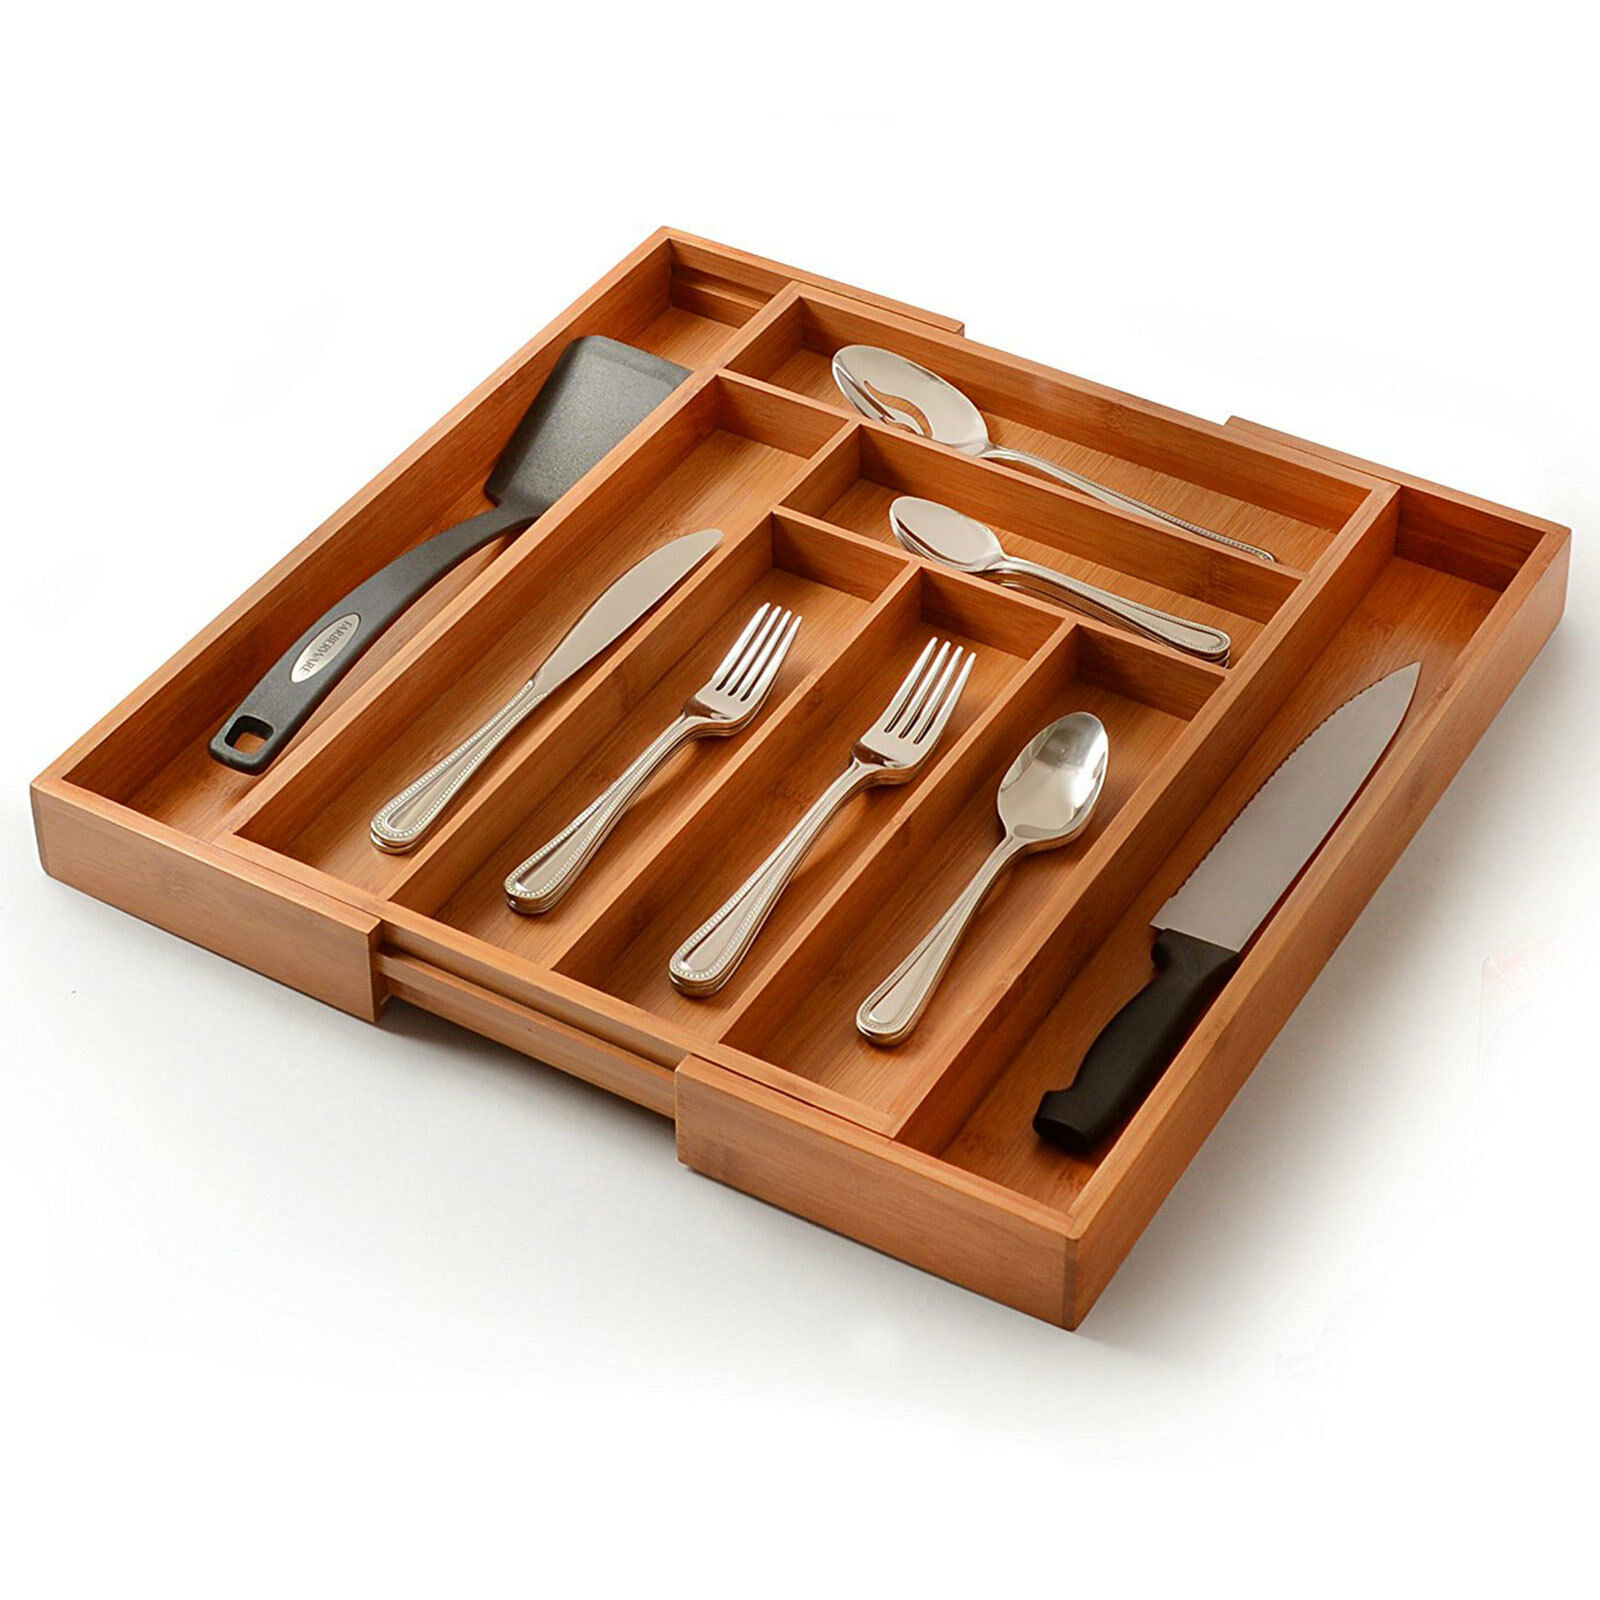 Bamboo Cutlery Silverware Flatware Utensil Tray Drawer Kitchen Organizer Storage